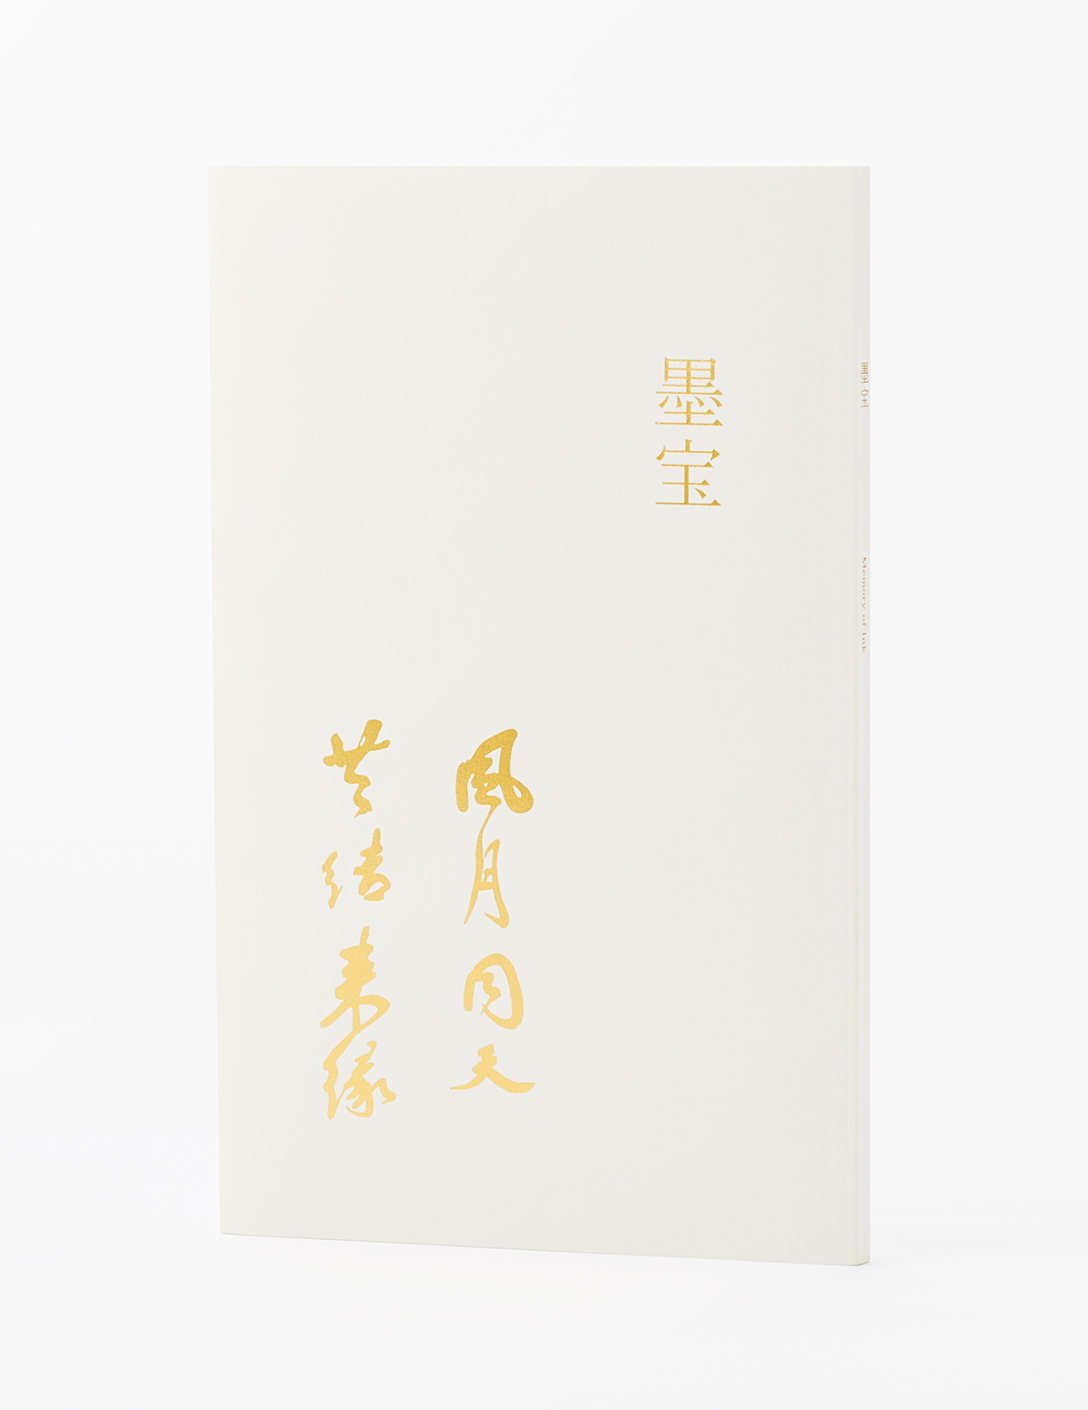 藤田観光創立60周年記念刊行本『墨宝』